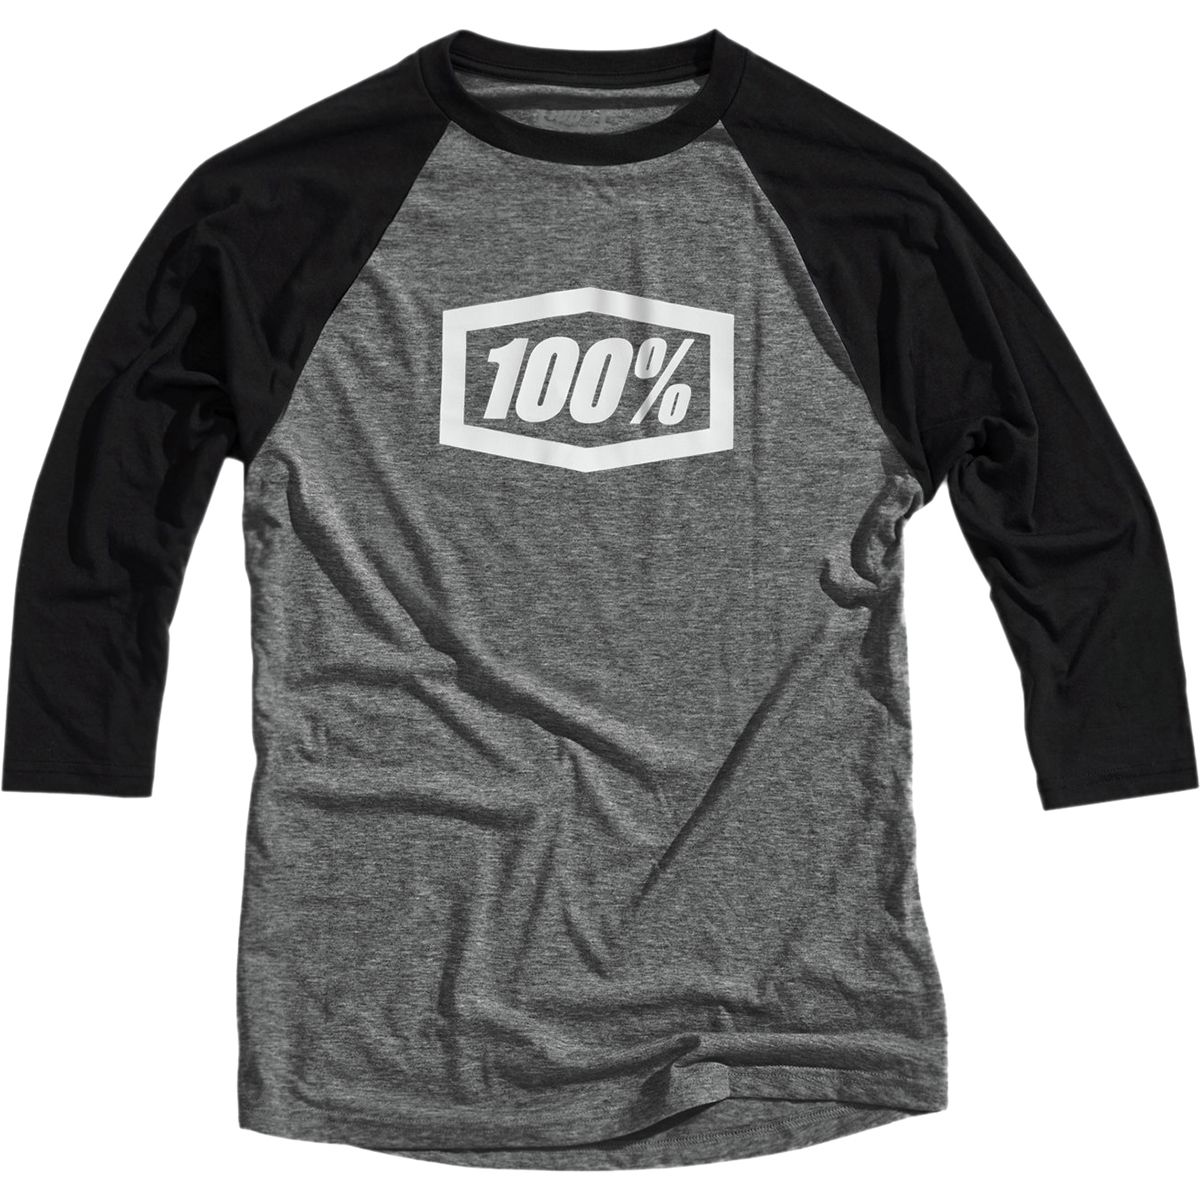 100% Essential 3/4-Sleeve Jersey - Men's